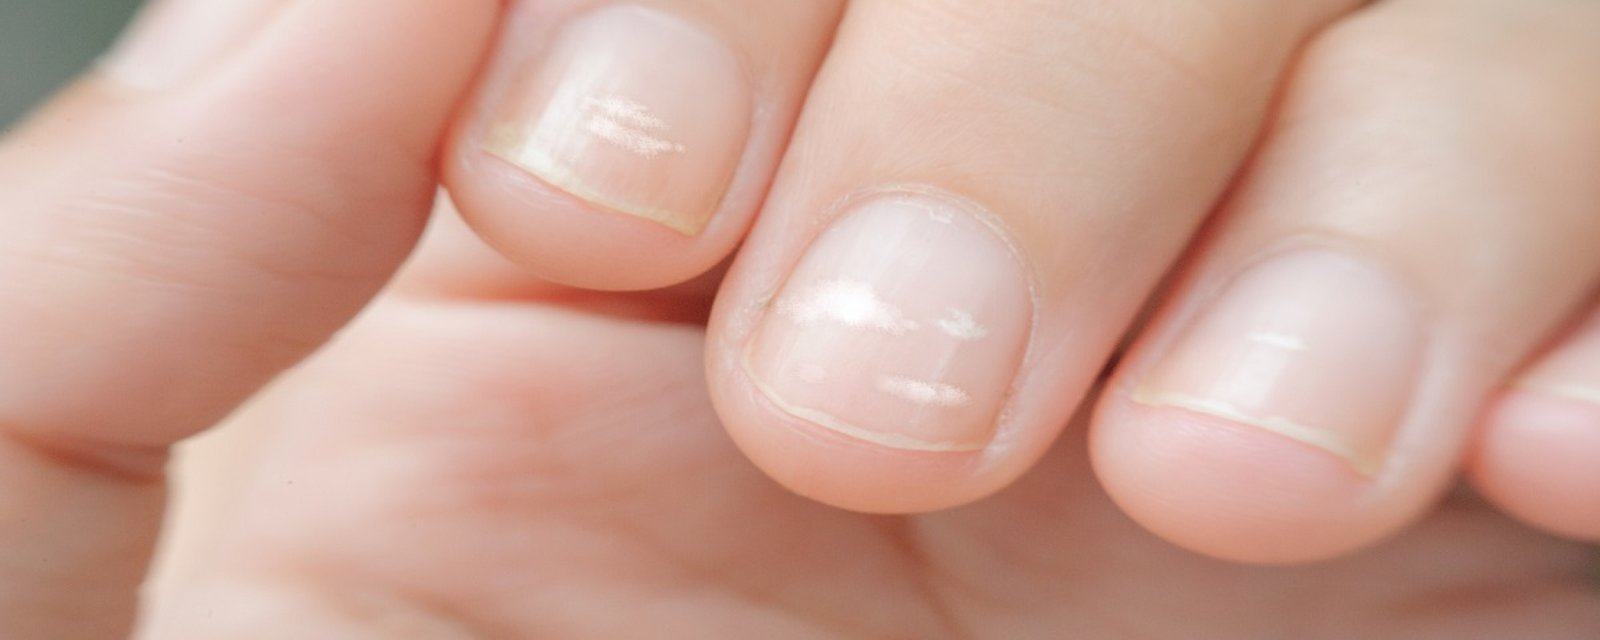 Vos ongles cassent ou dédoublent constamment? Voici ce que votre corps essaie de vous dire! 